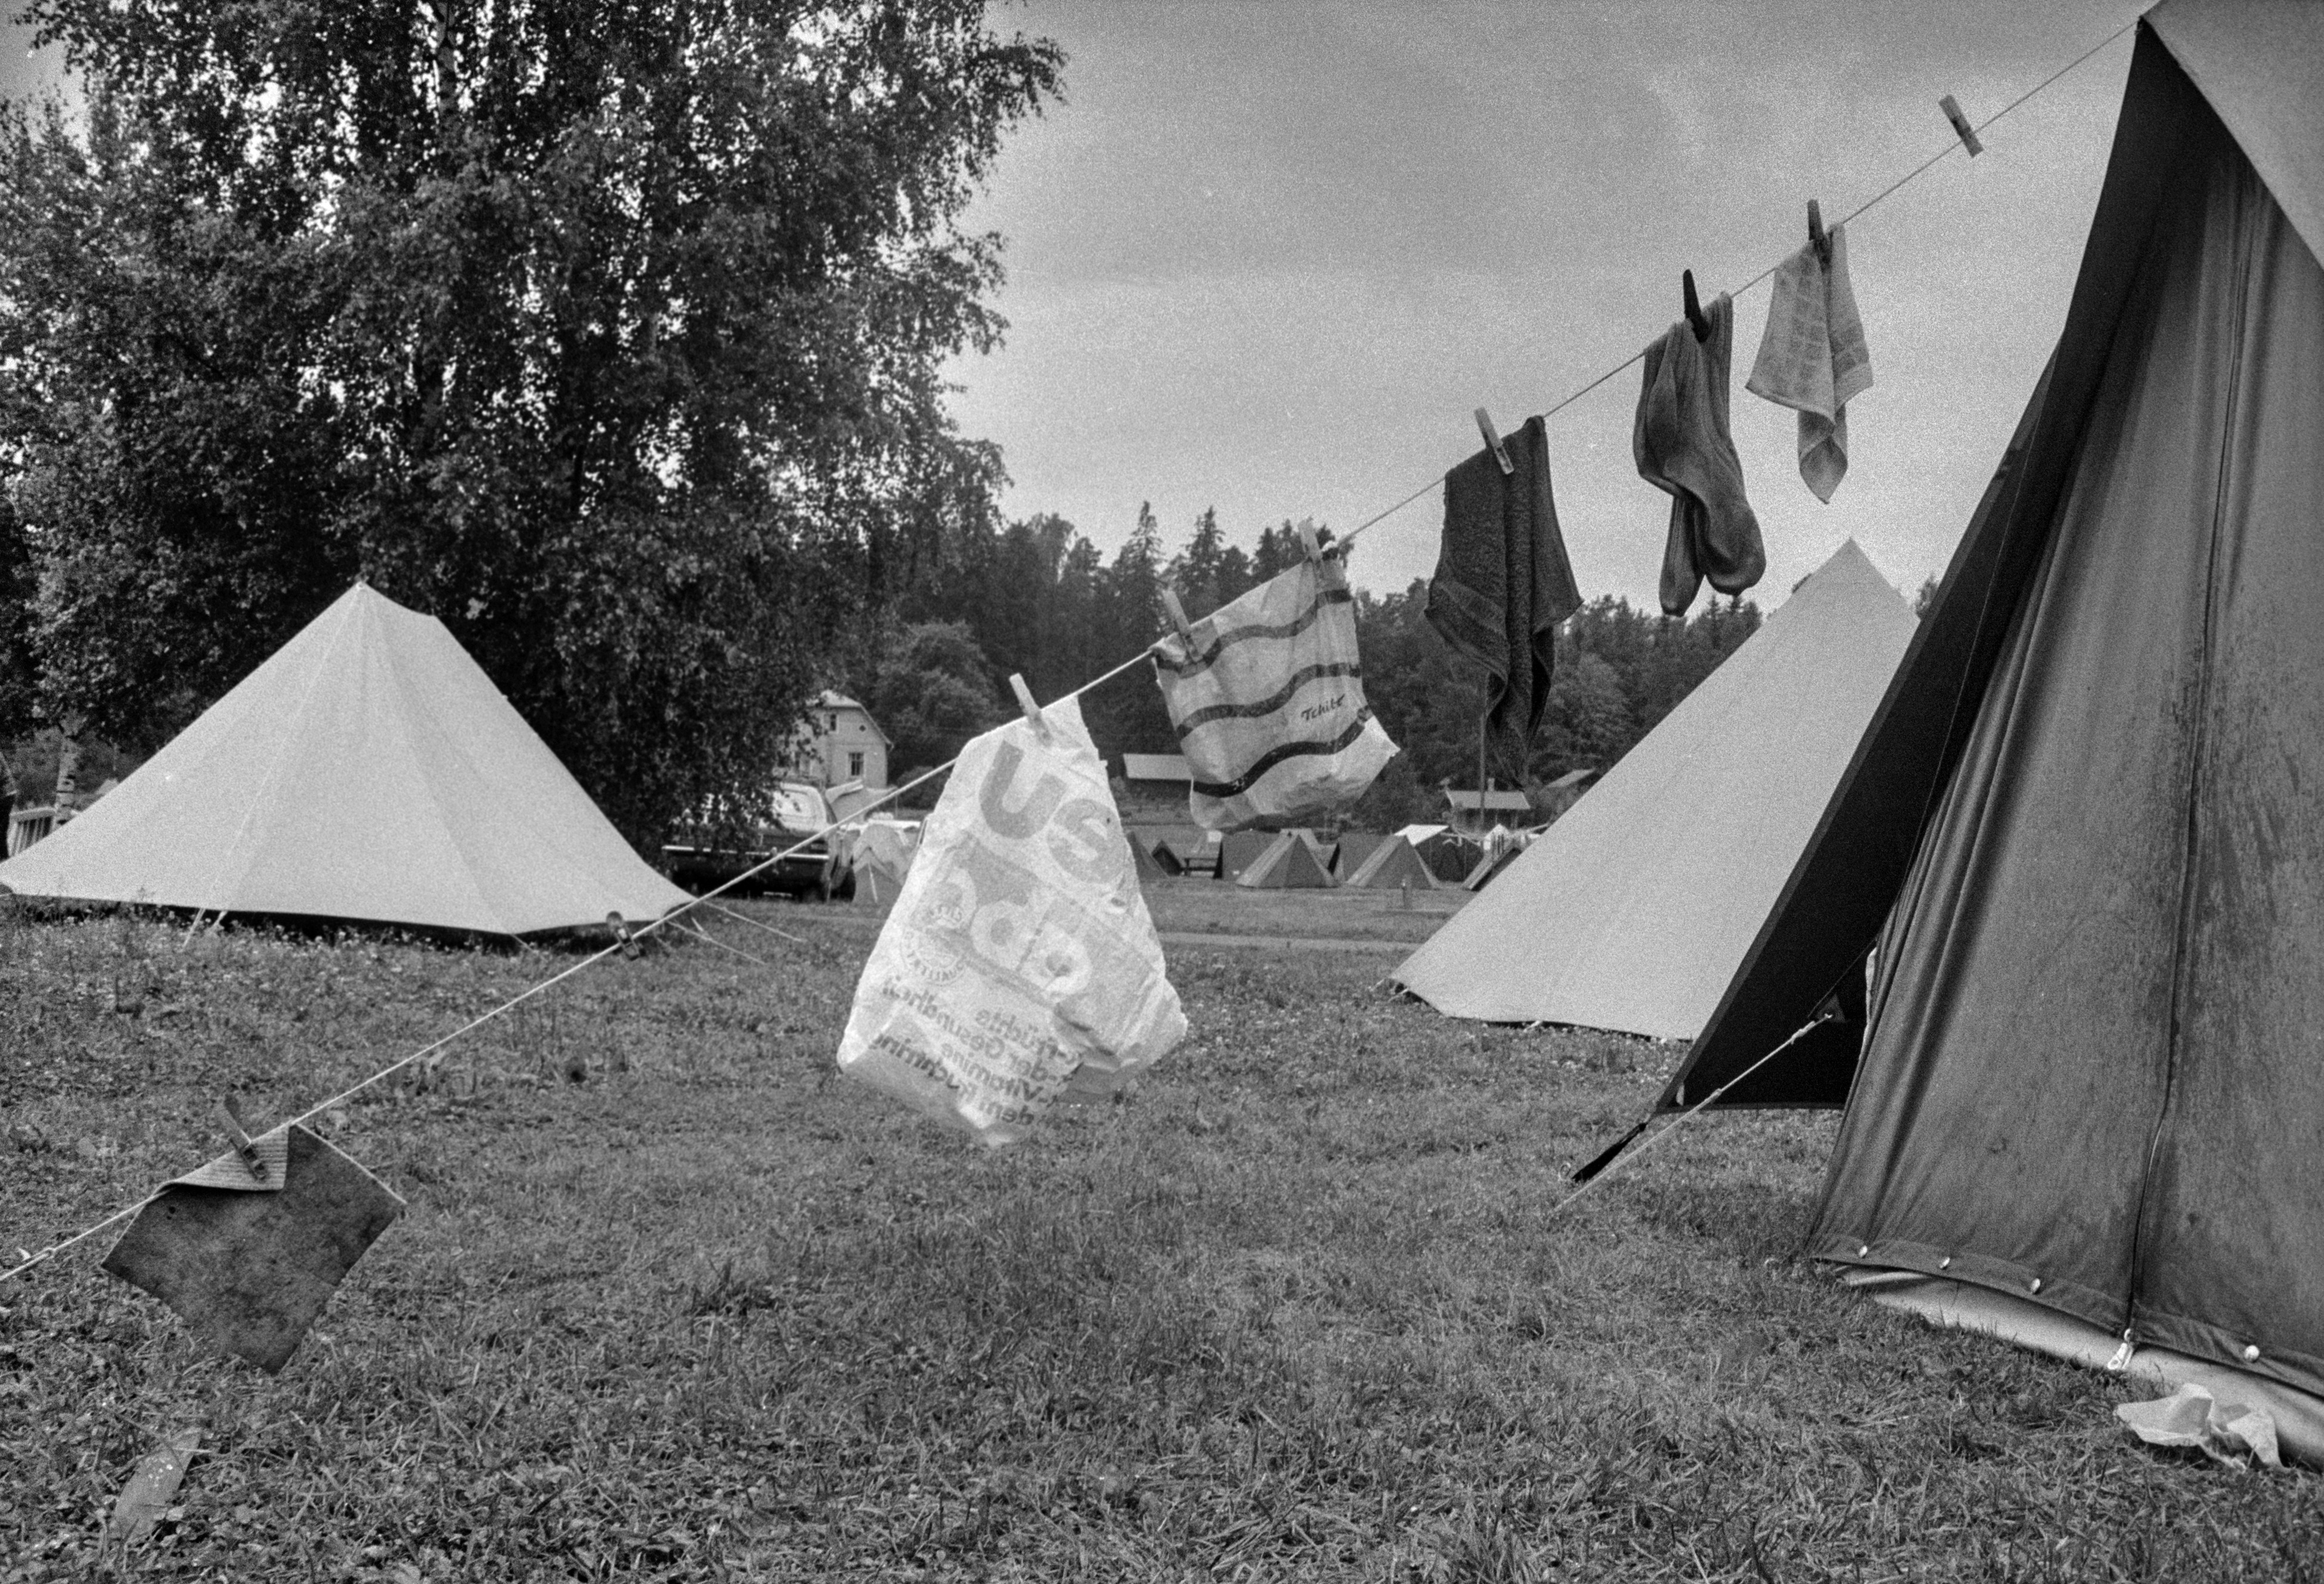 Rastila Camping leirintäalue. Leirintäalueelle pystytettyjä telttoja. Yhden teltan kiinnitysnaruun on ripustettu kuivumaan pyykkejä.